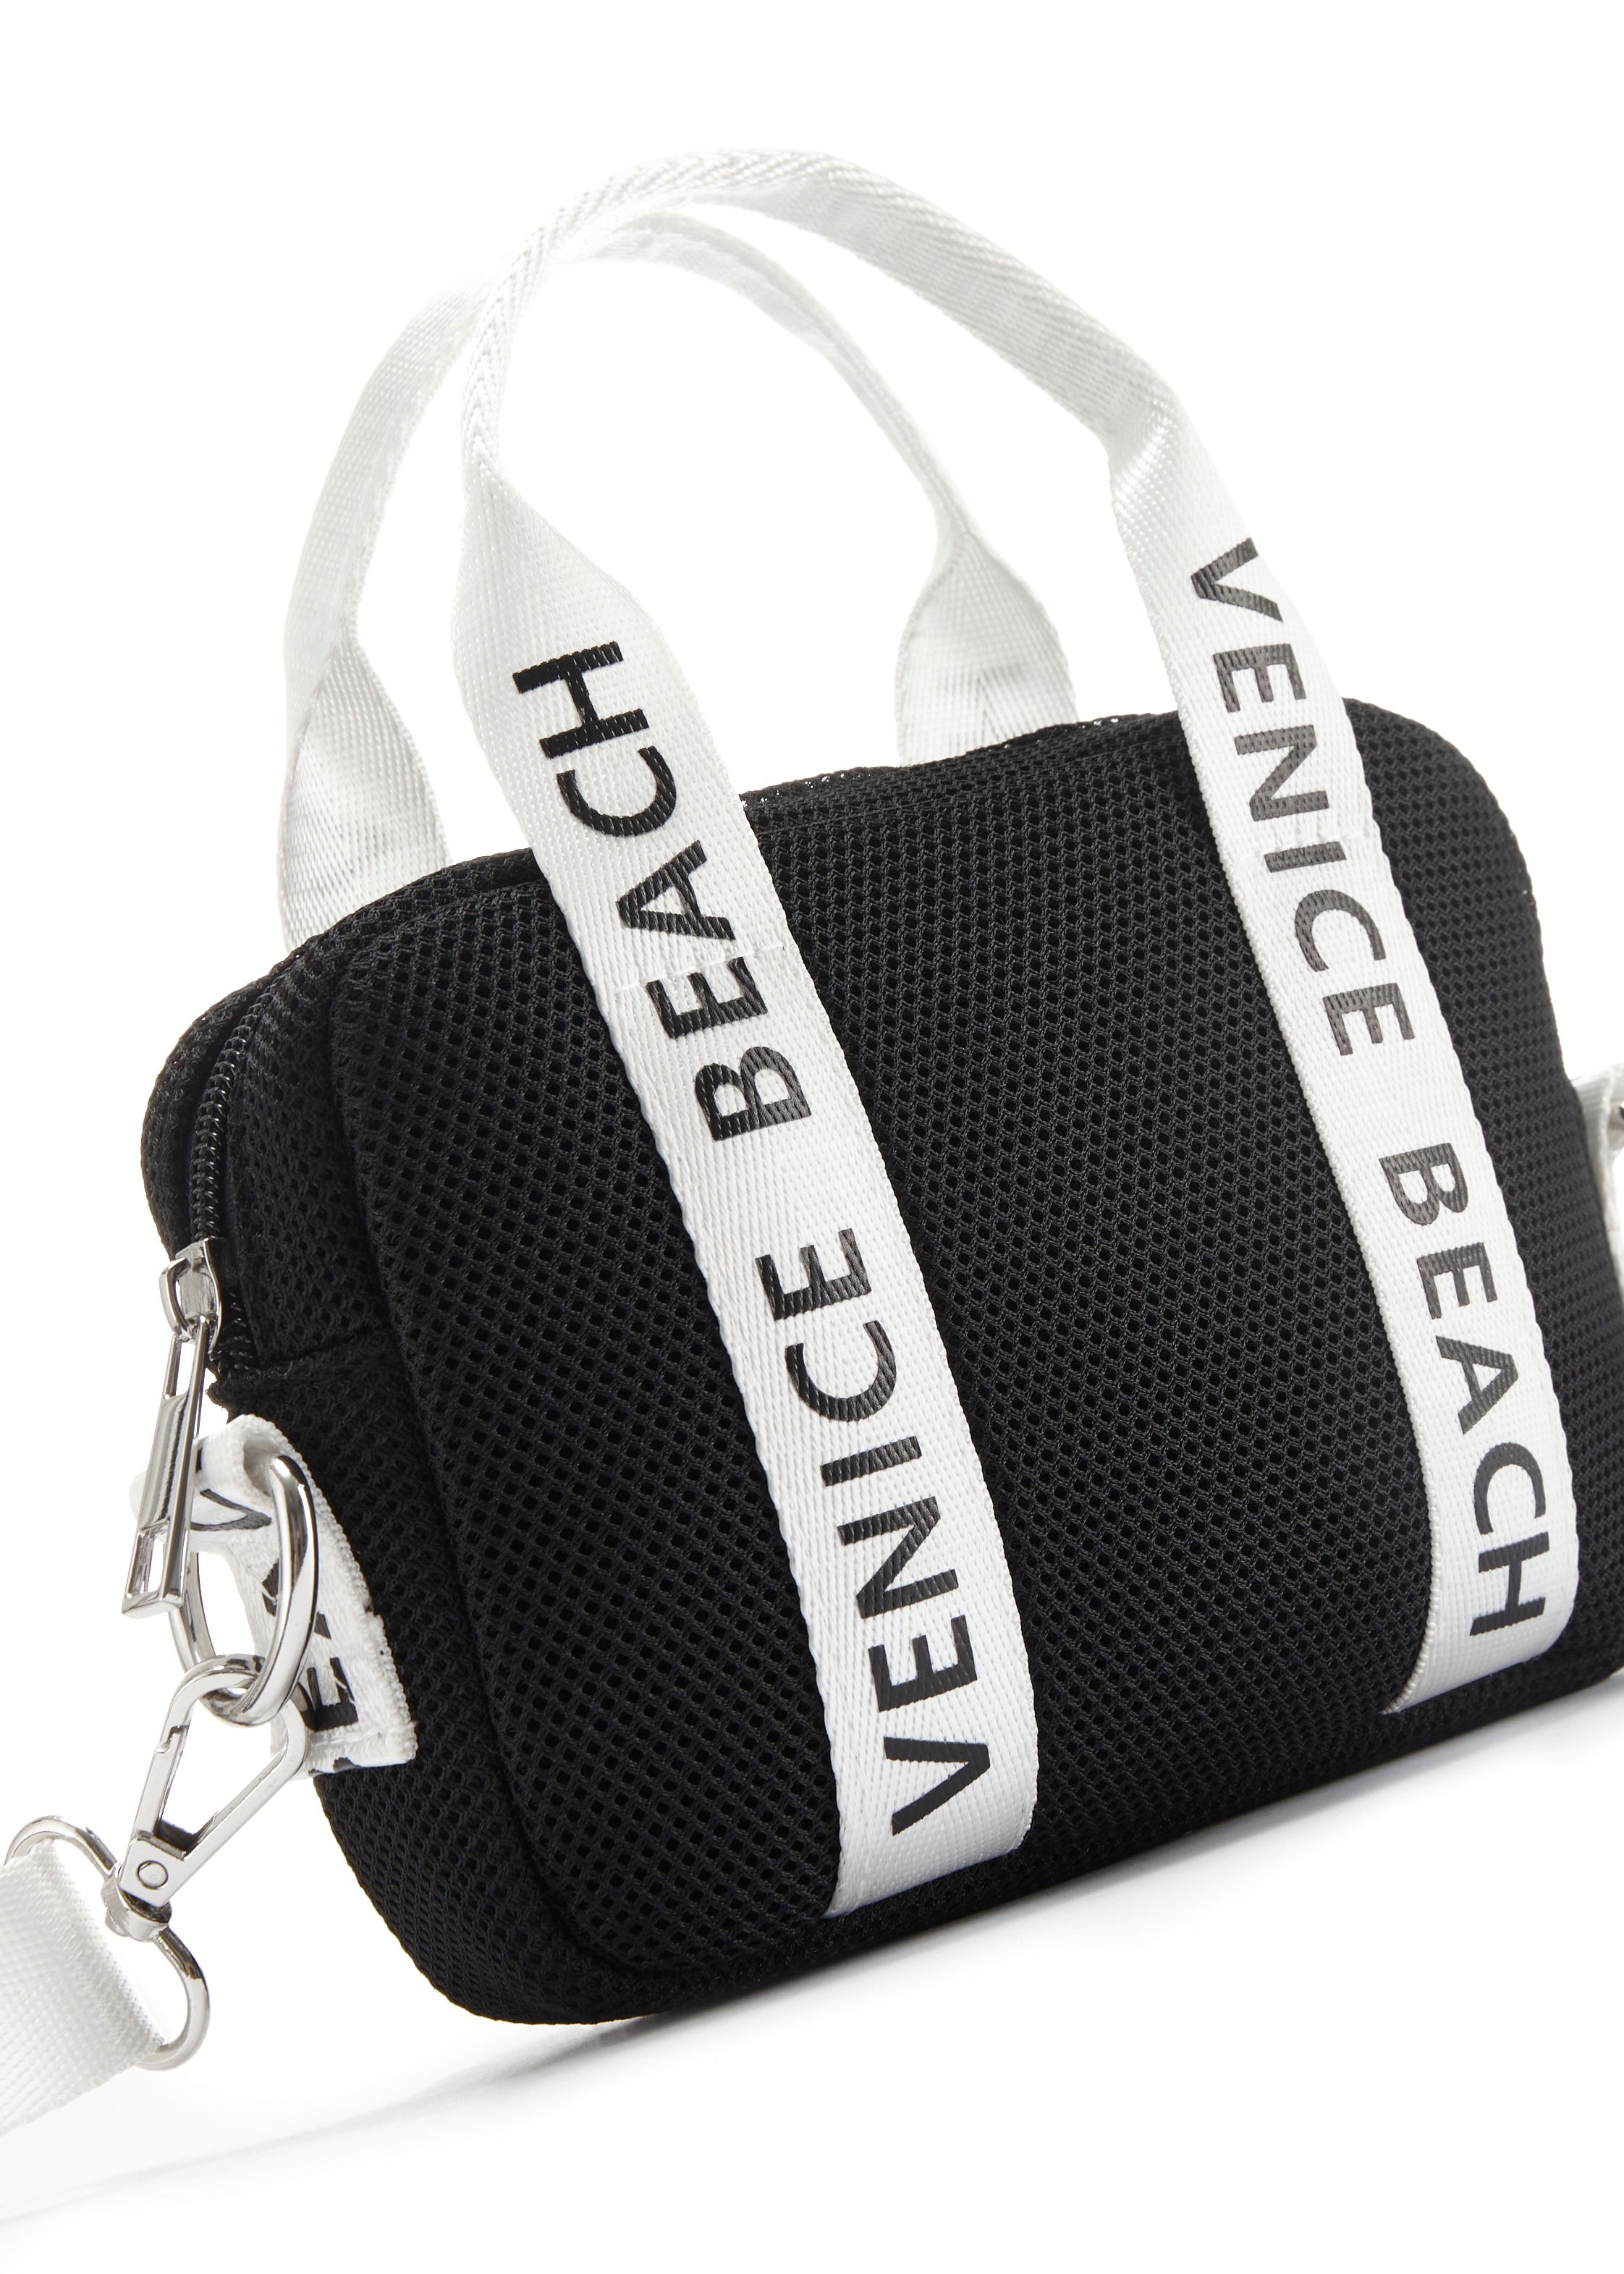 Venice Beach Umhängetasche, Minibag, Handtasche aus Mesh Material VEGAN